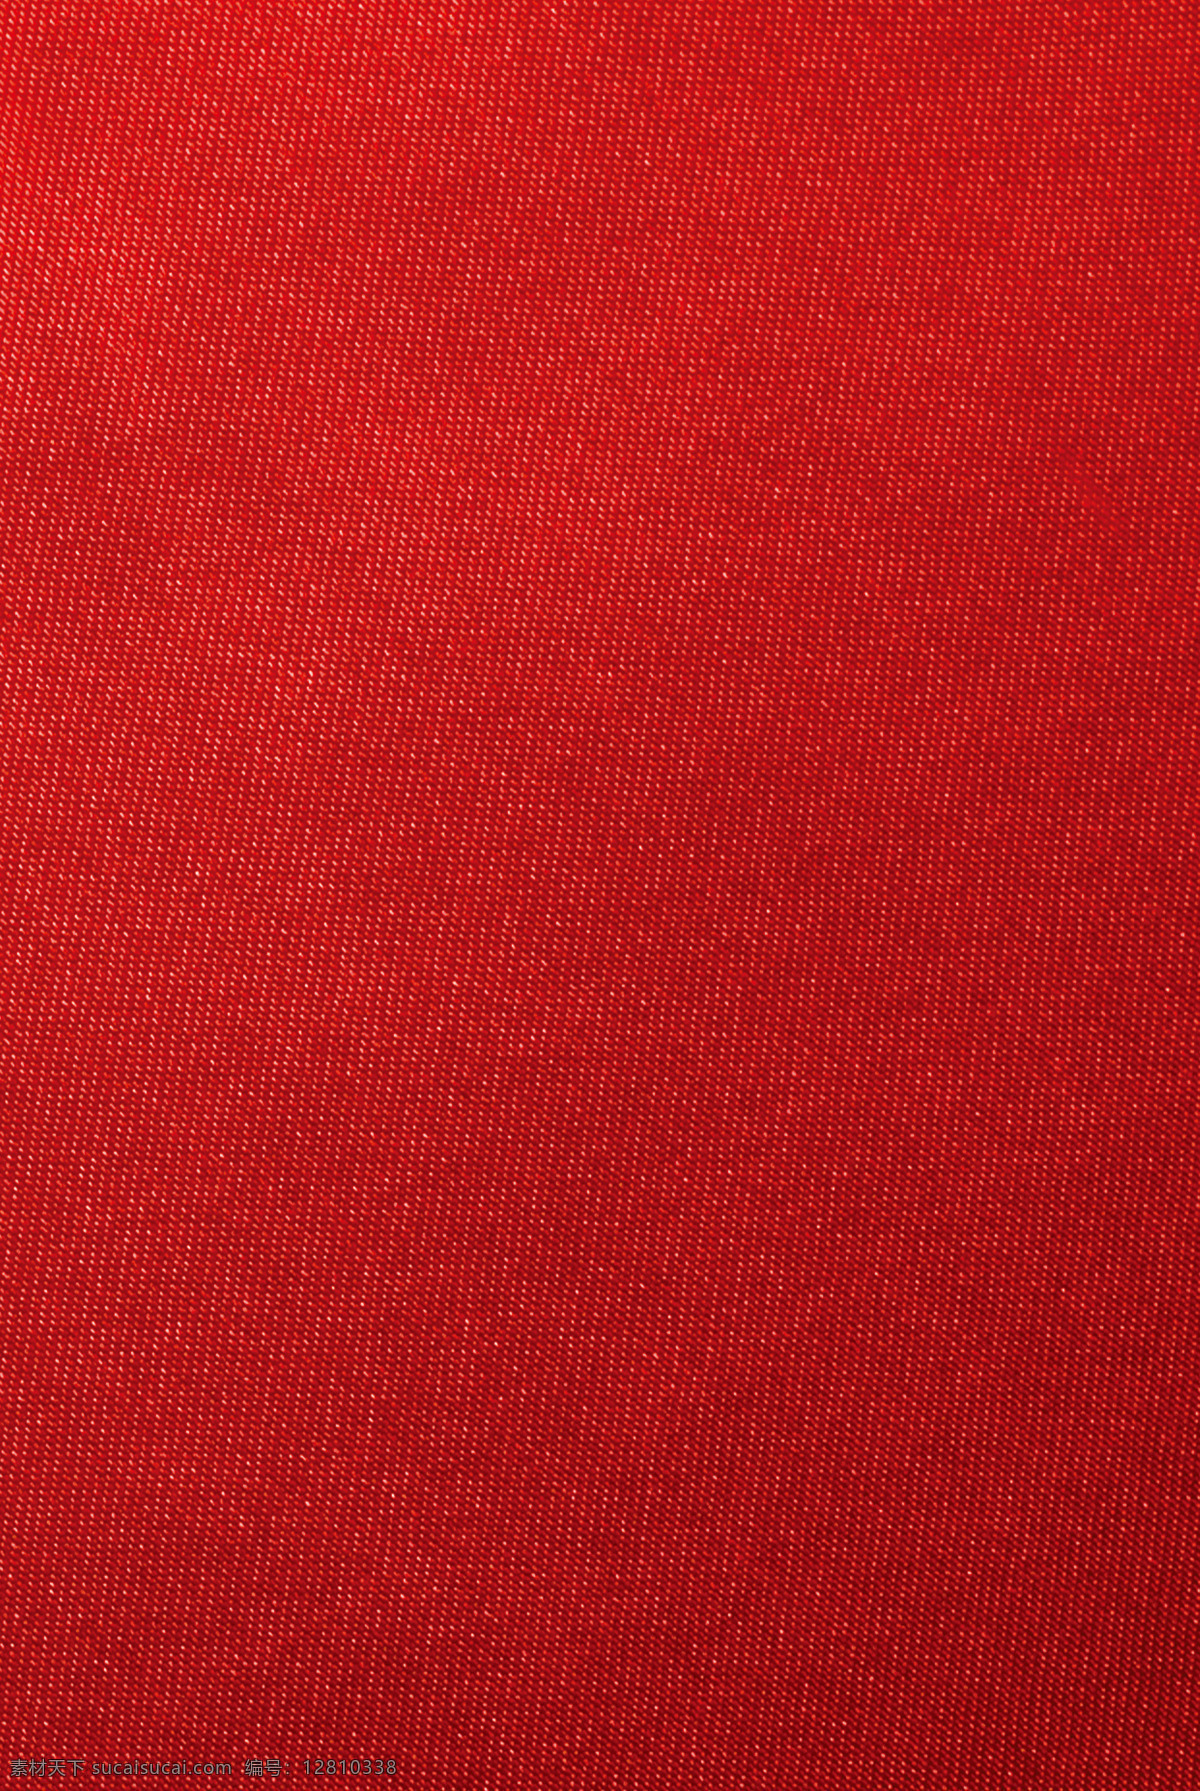 红色 布料 背景 绸布 底纹 设计素材 分层 背景素材